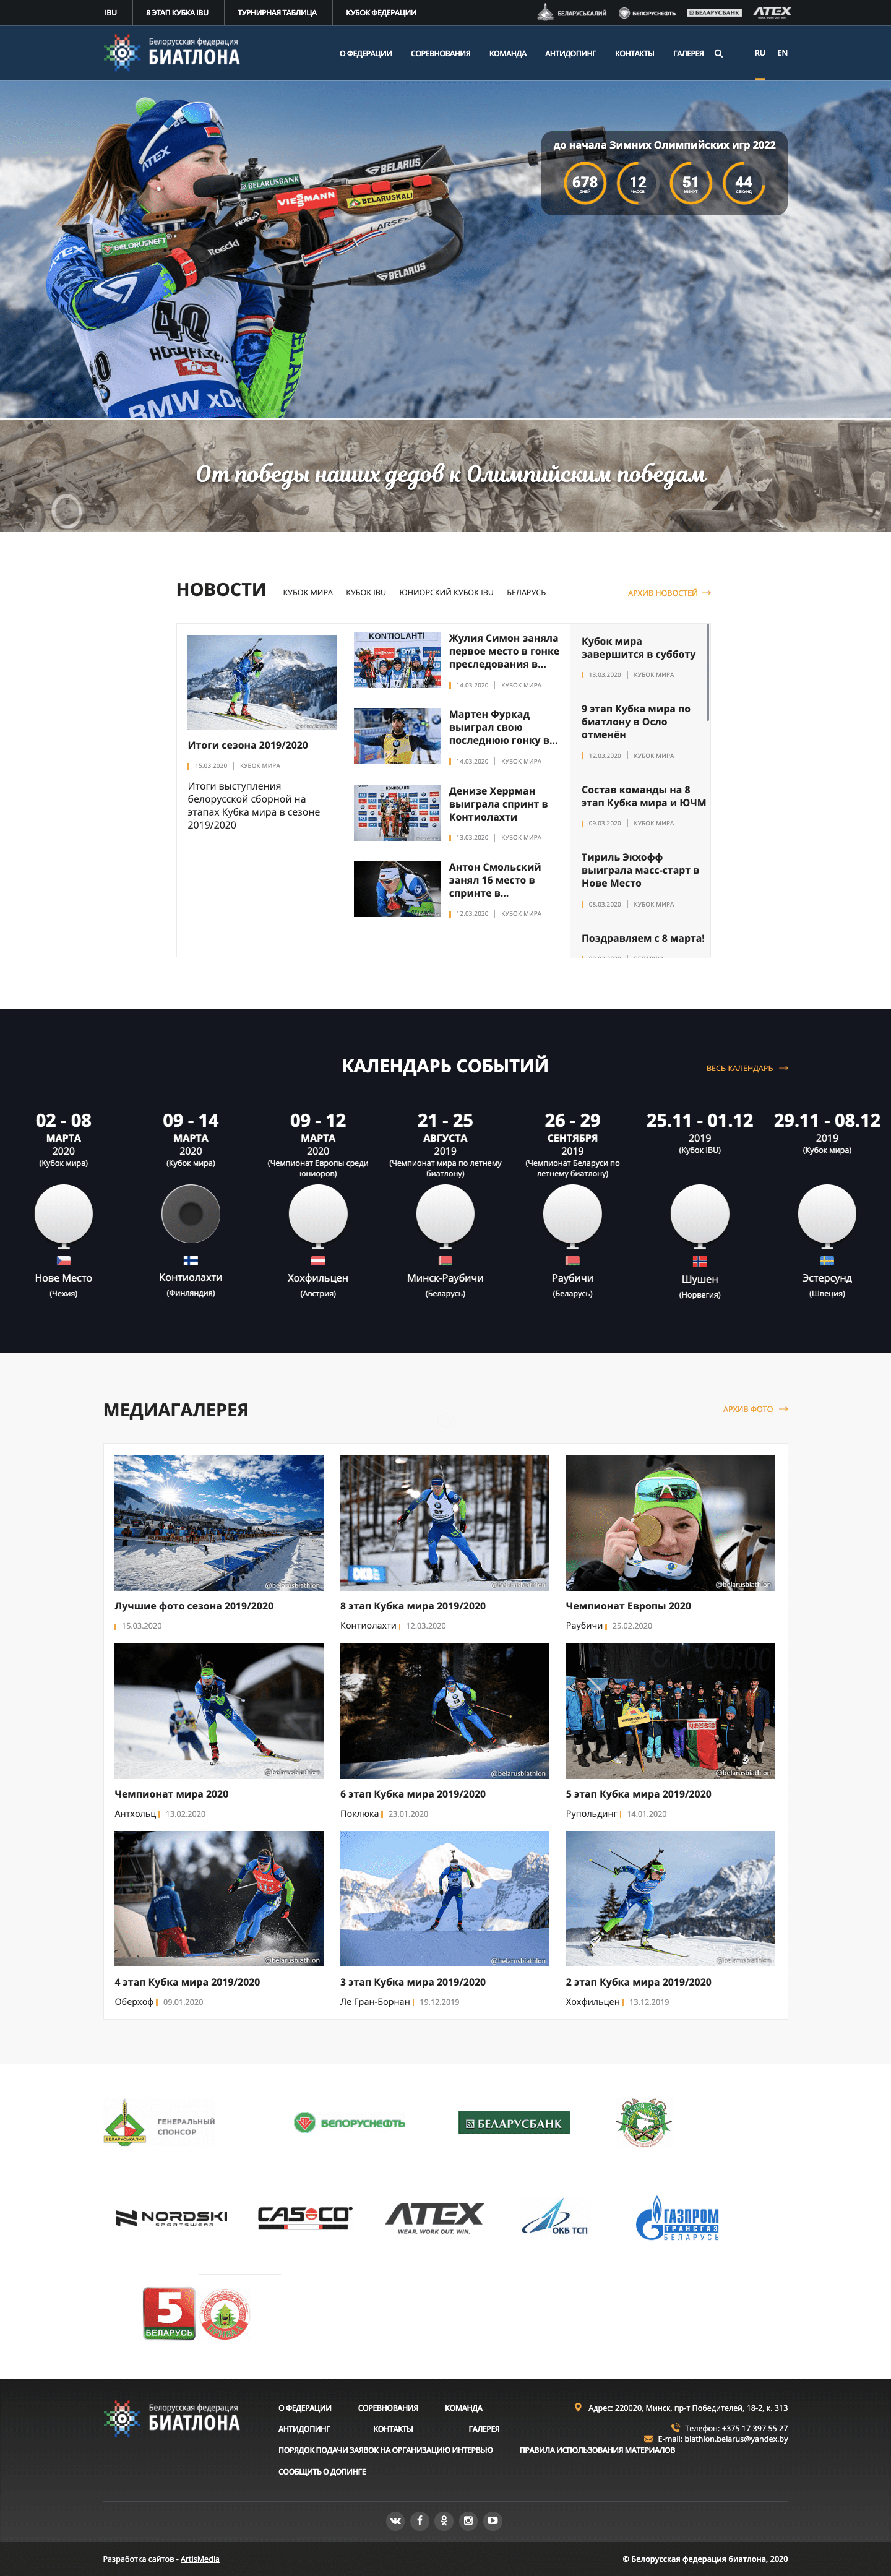 Сайты Белорусской федерации биатлона